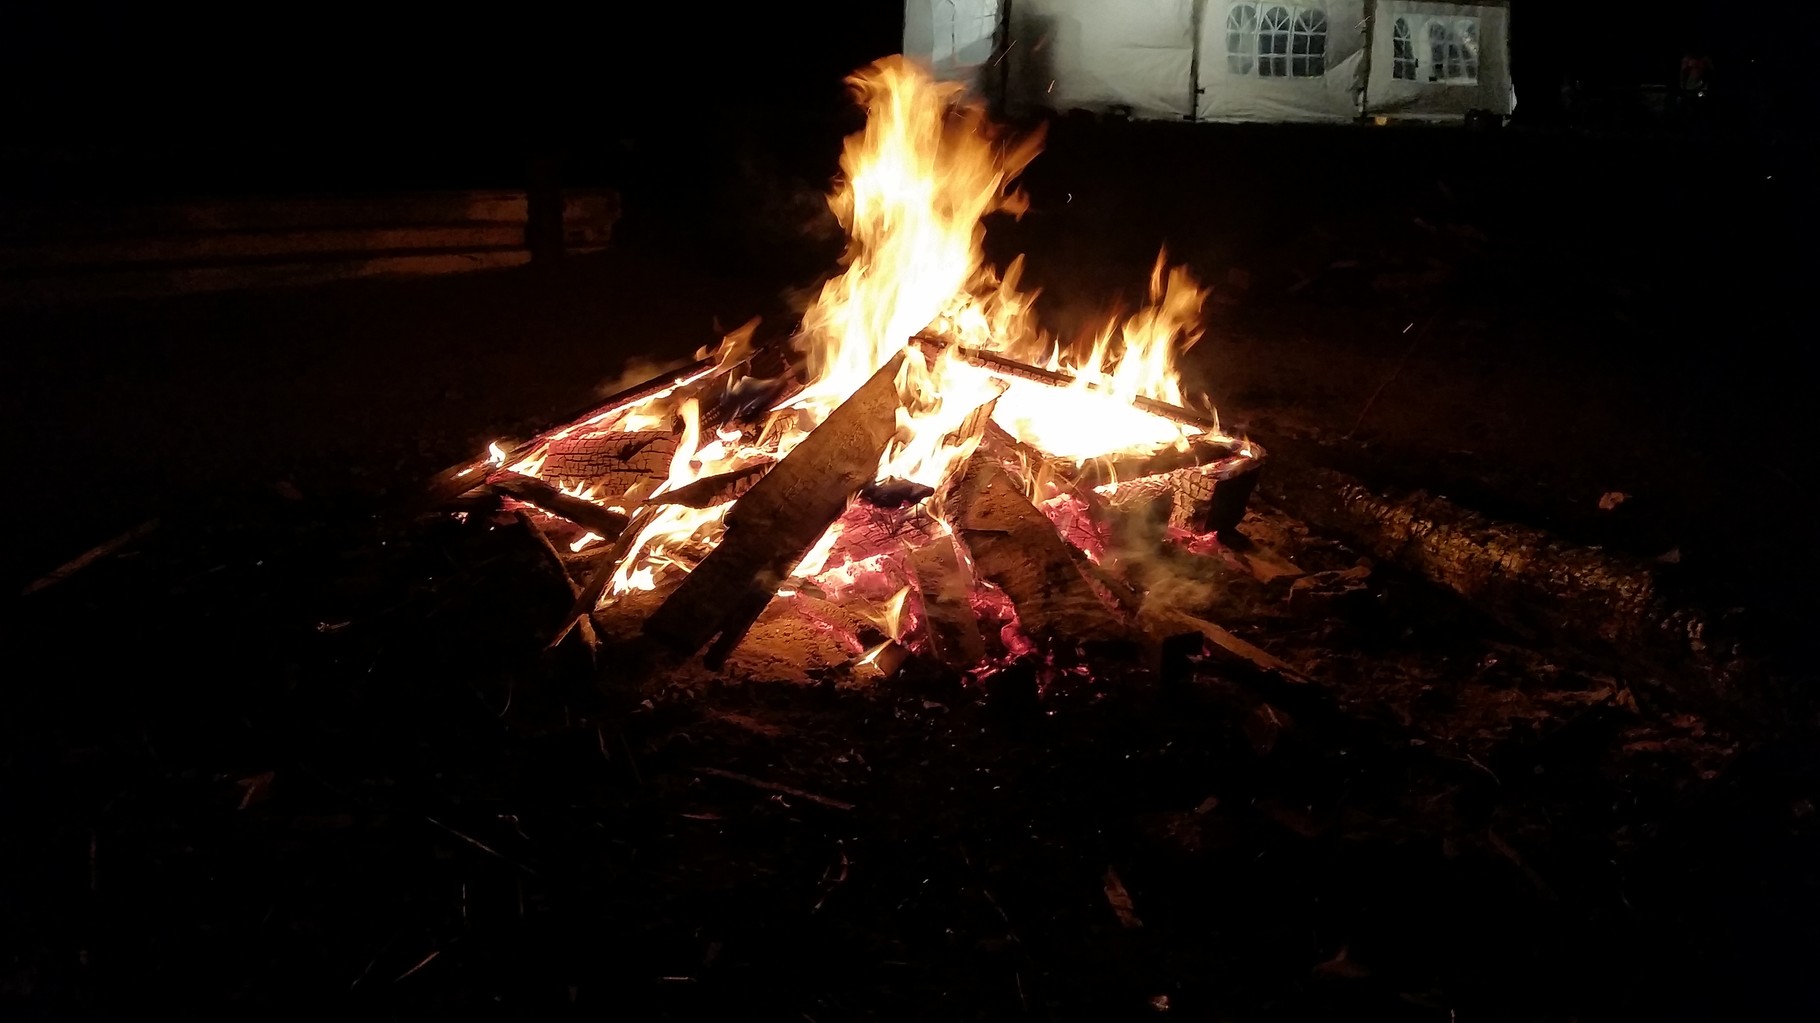 Am ersten Abend am Lagerfeuer zu sitzen war schon etwas tolles die Temperaturen waren sehr kühl und wir waren auch nicht alleine dort ^^